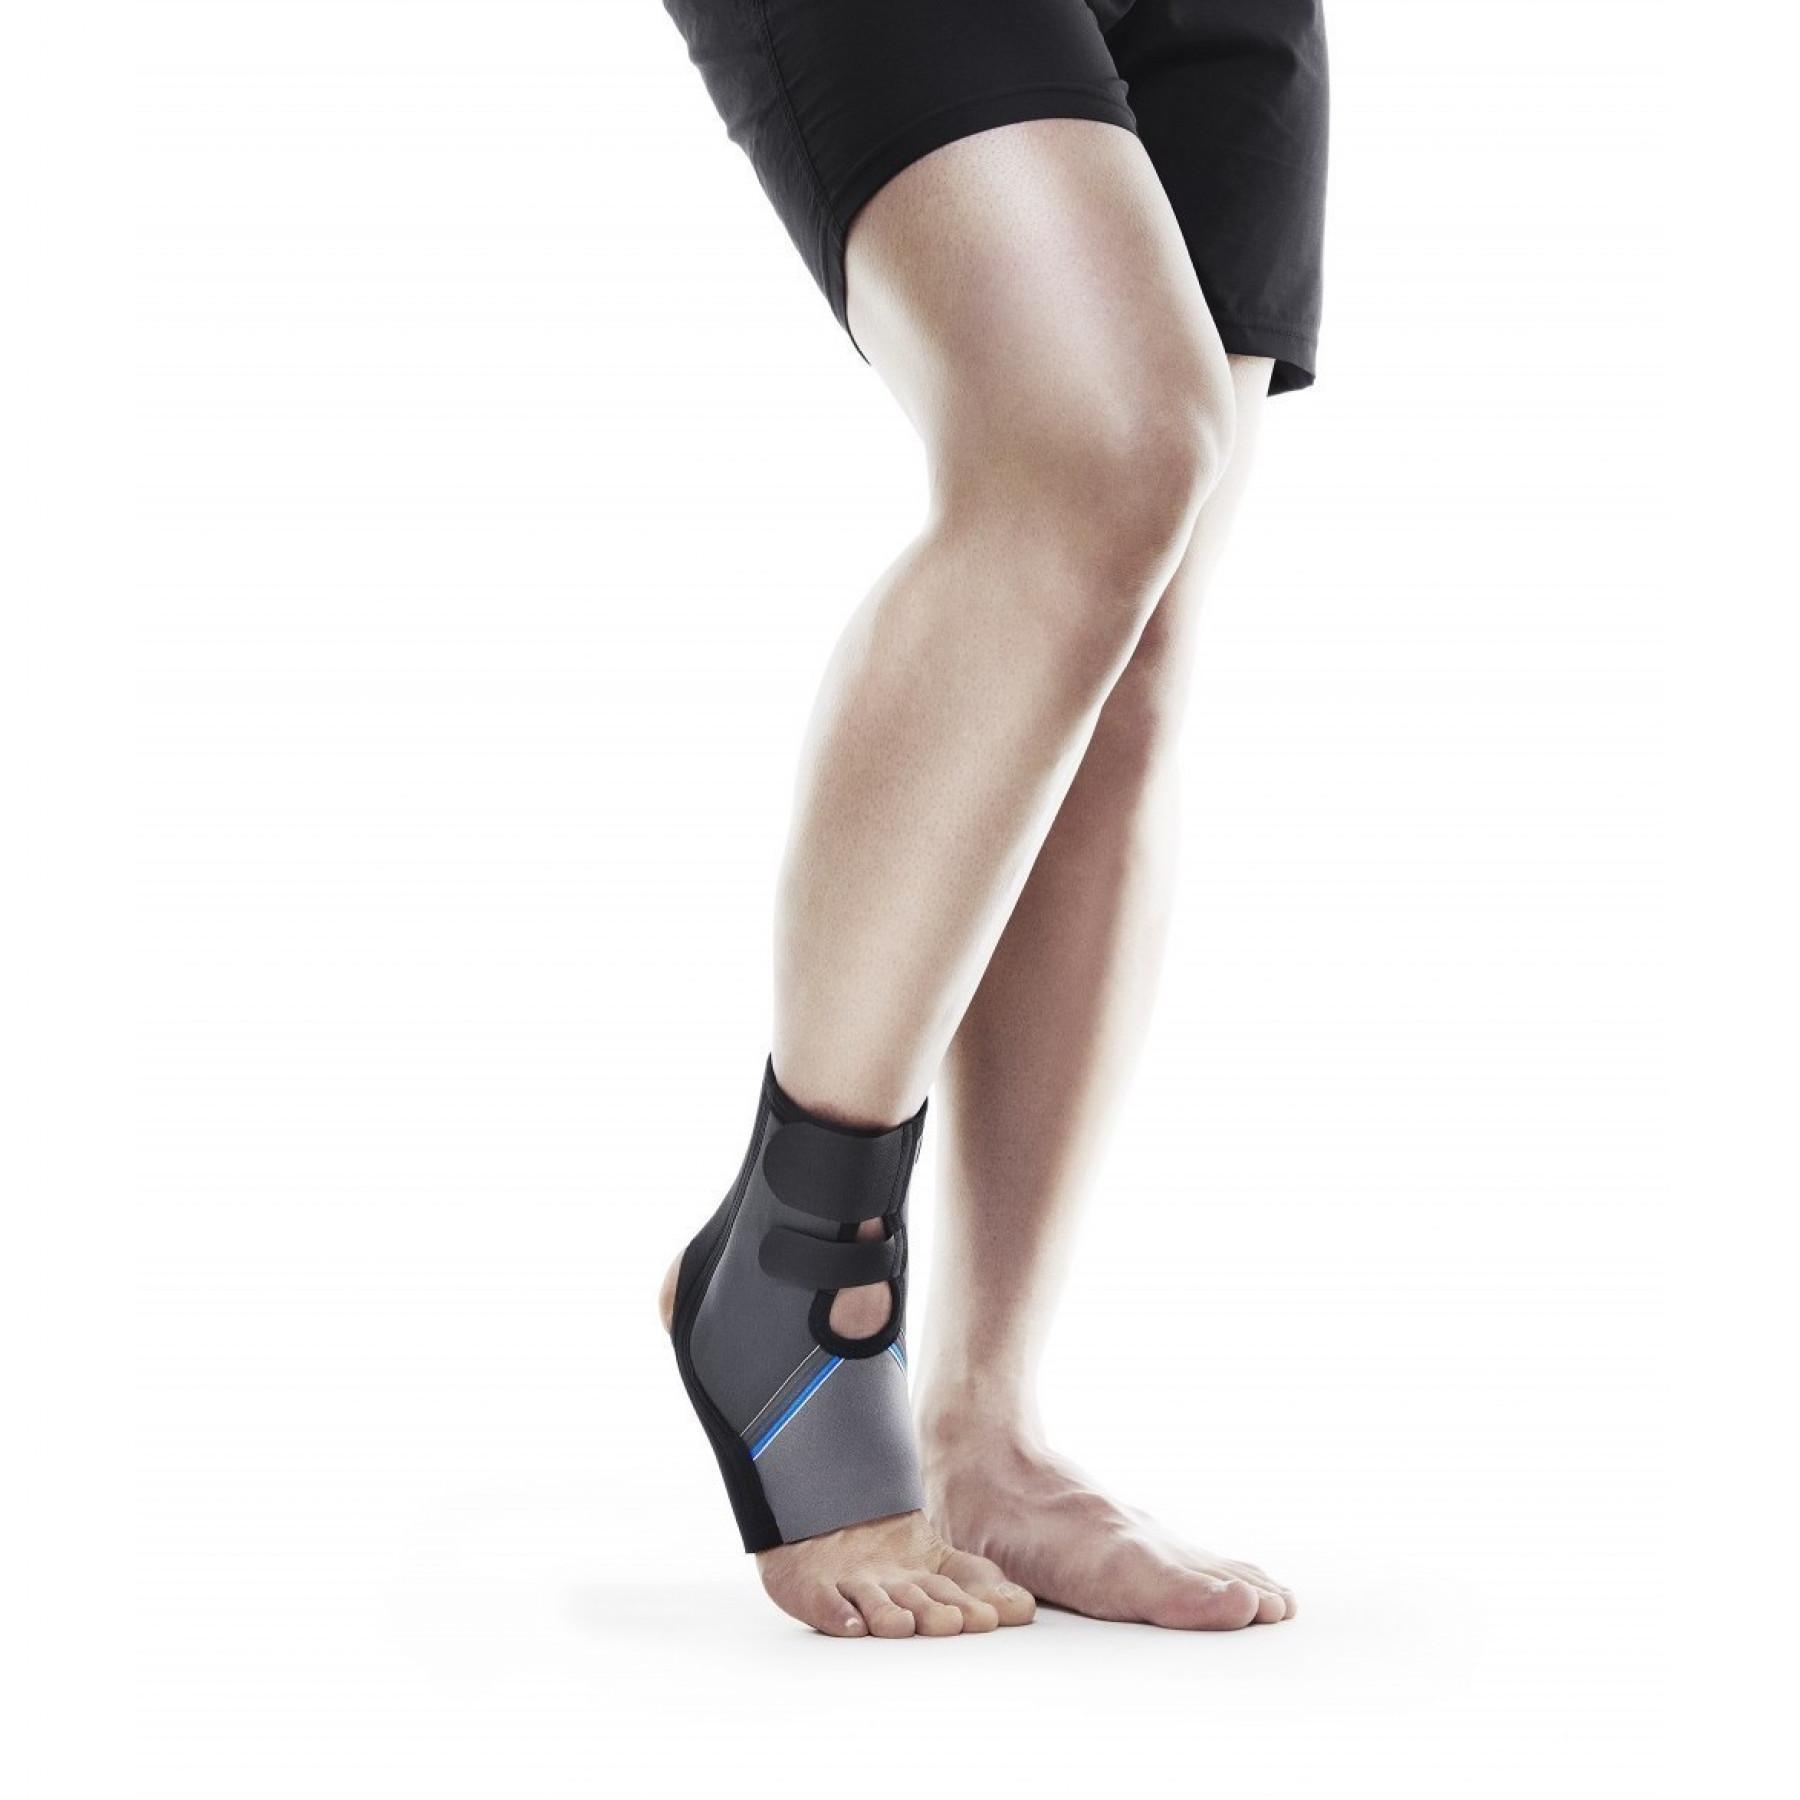 Tornozeleira Rehband QD Ankle Support